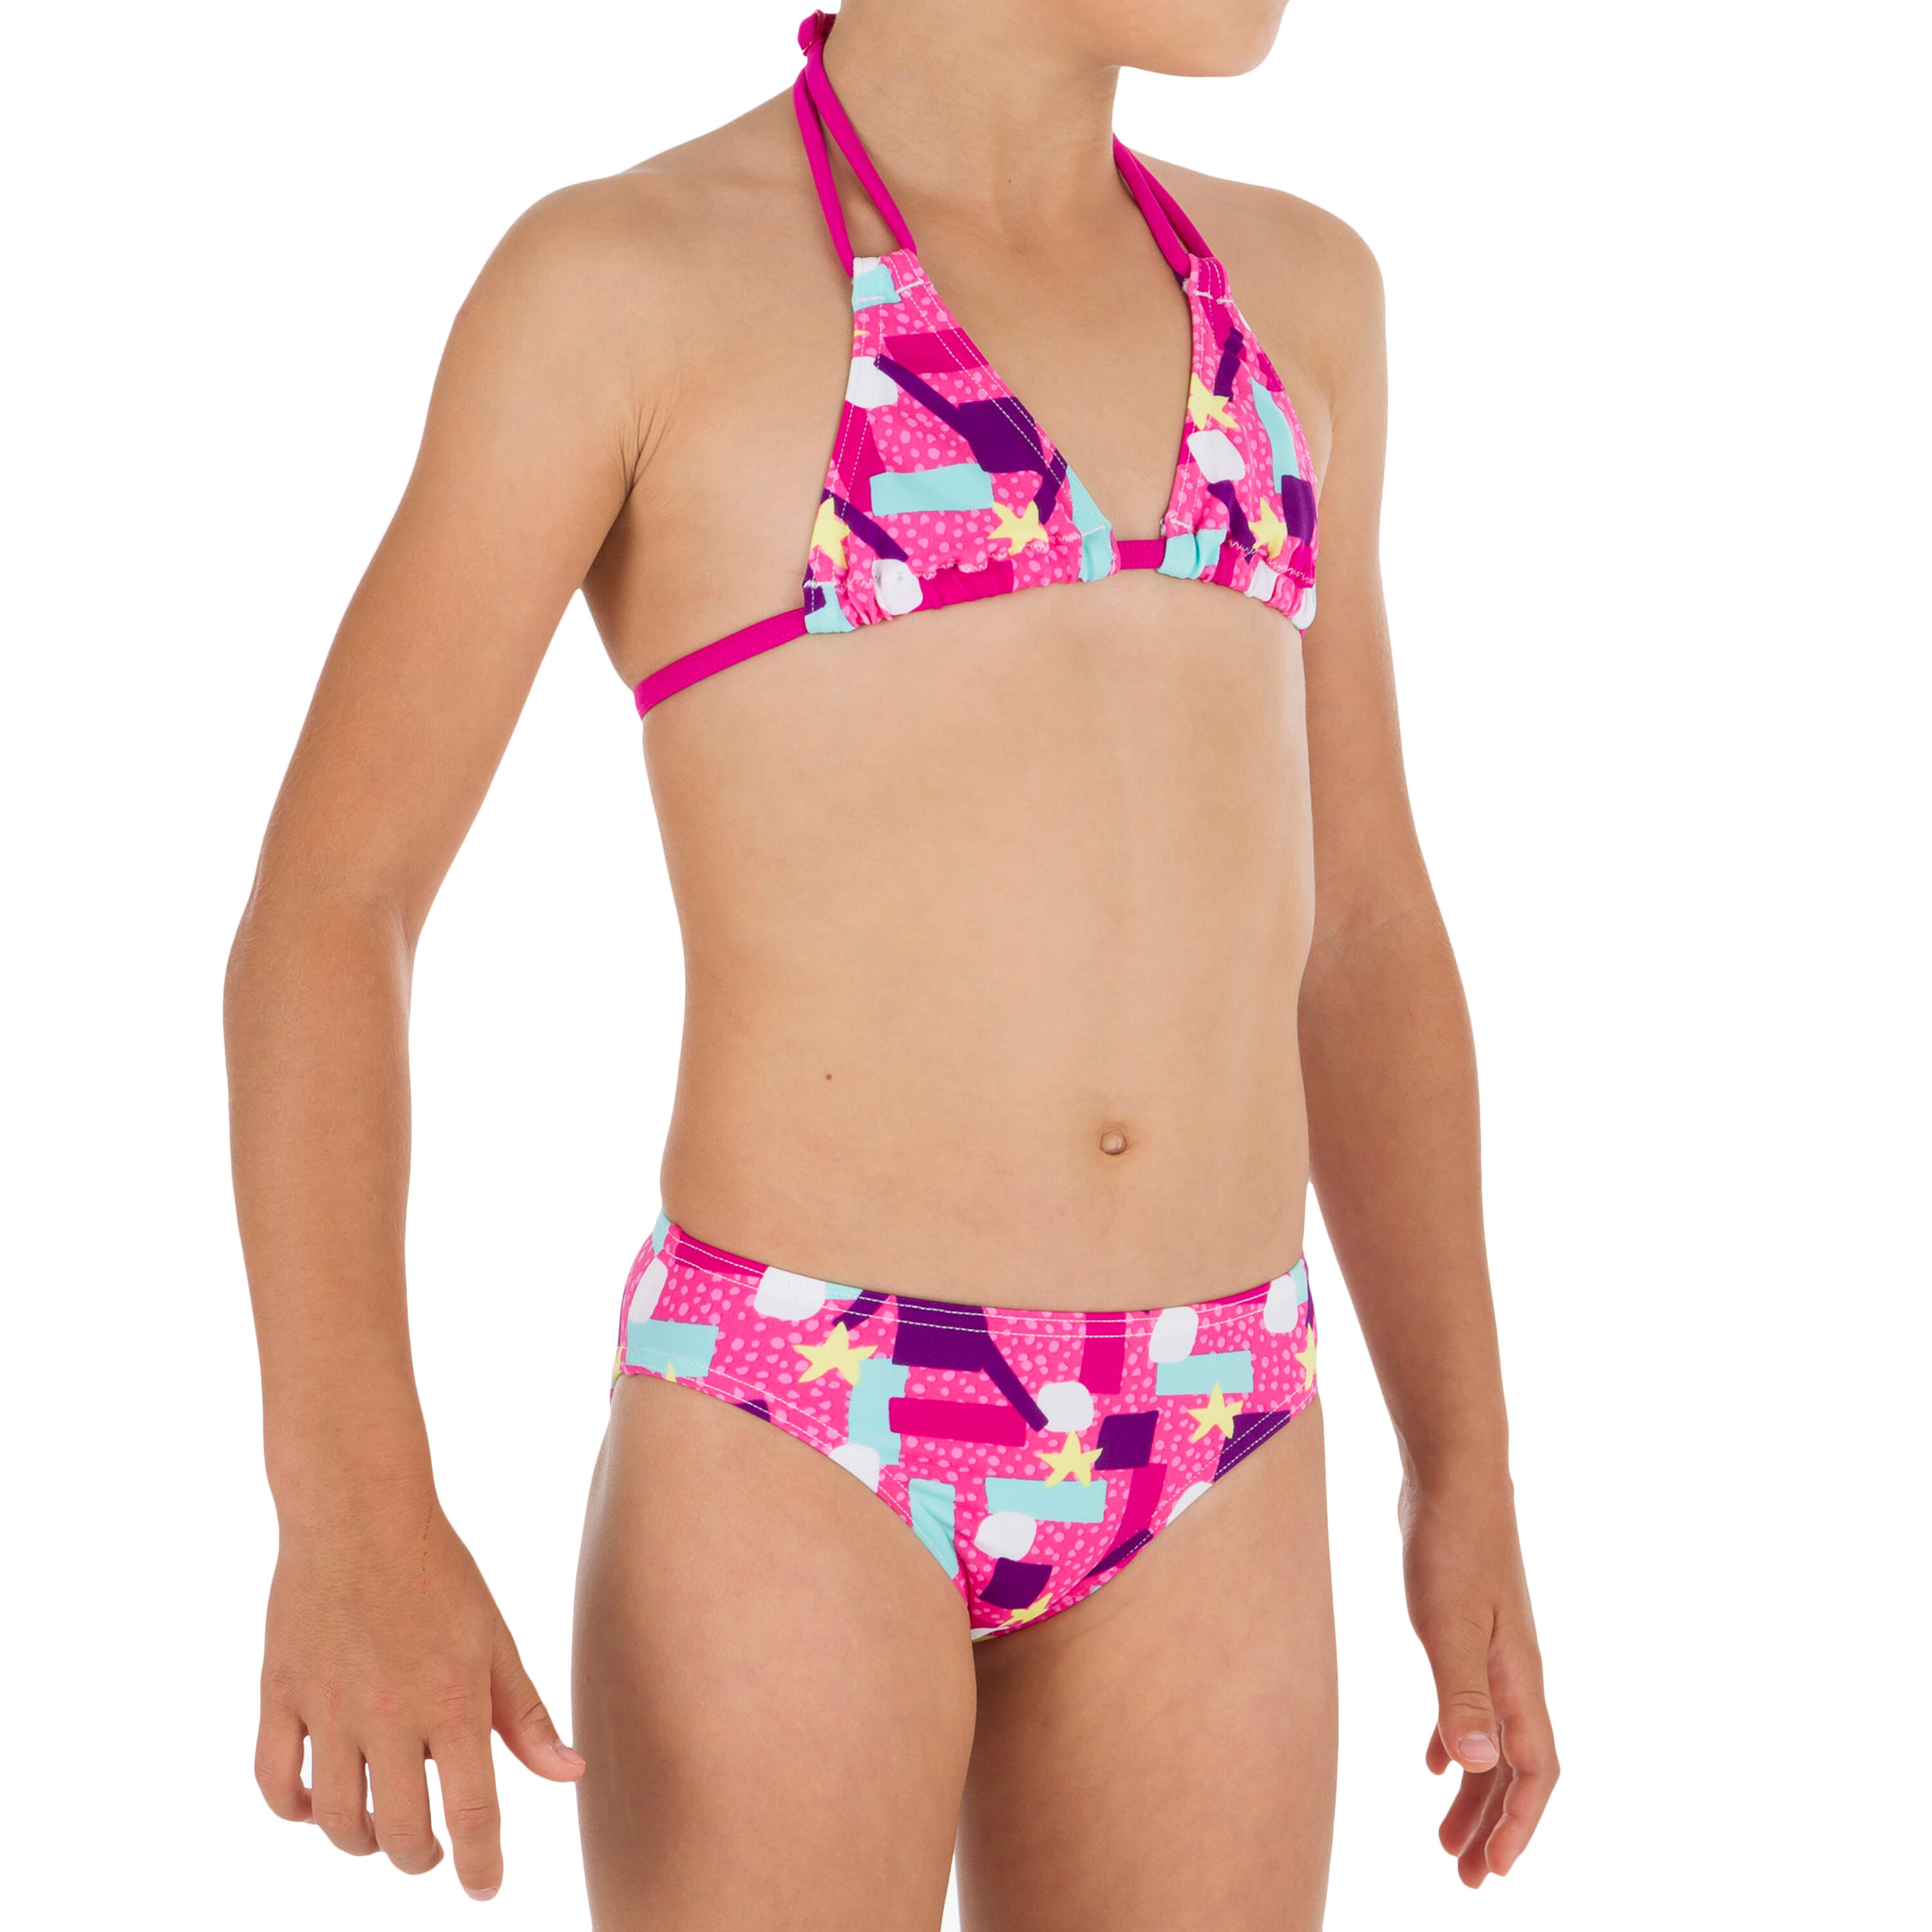 OLAIAN Taloo Girls' Two-Piece Triangle Bikini Swimsuit - Lagoon Pink